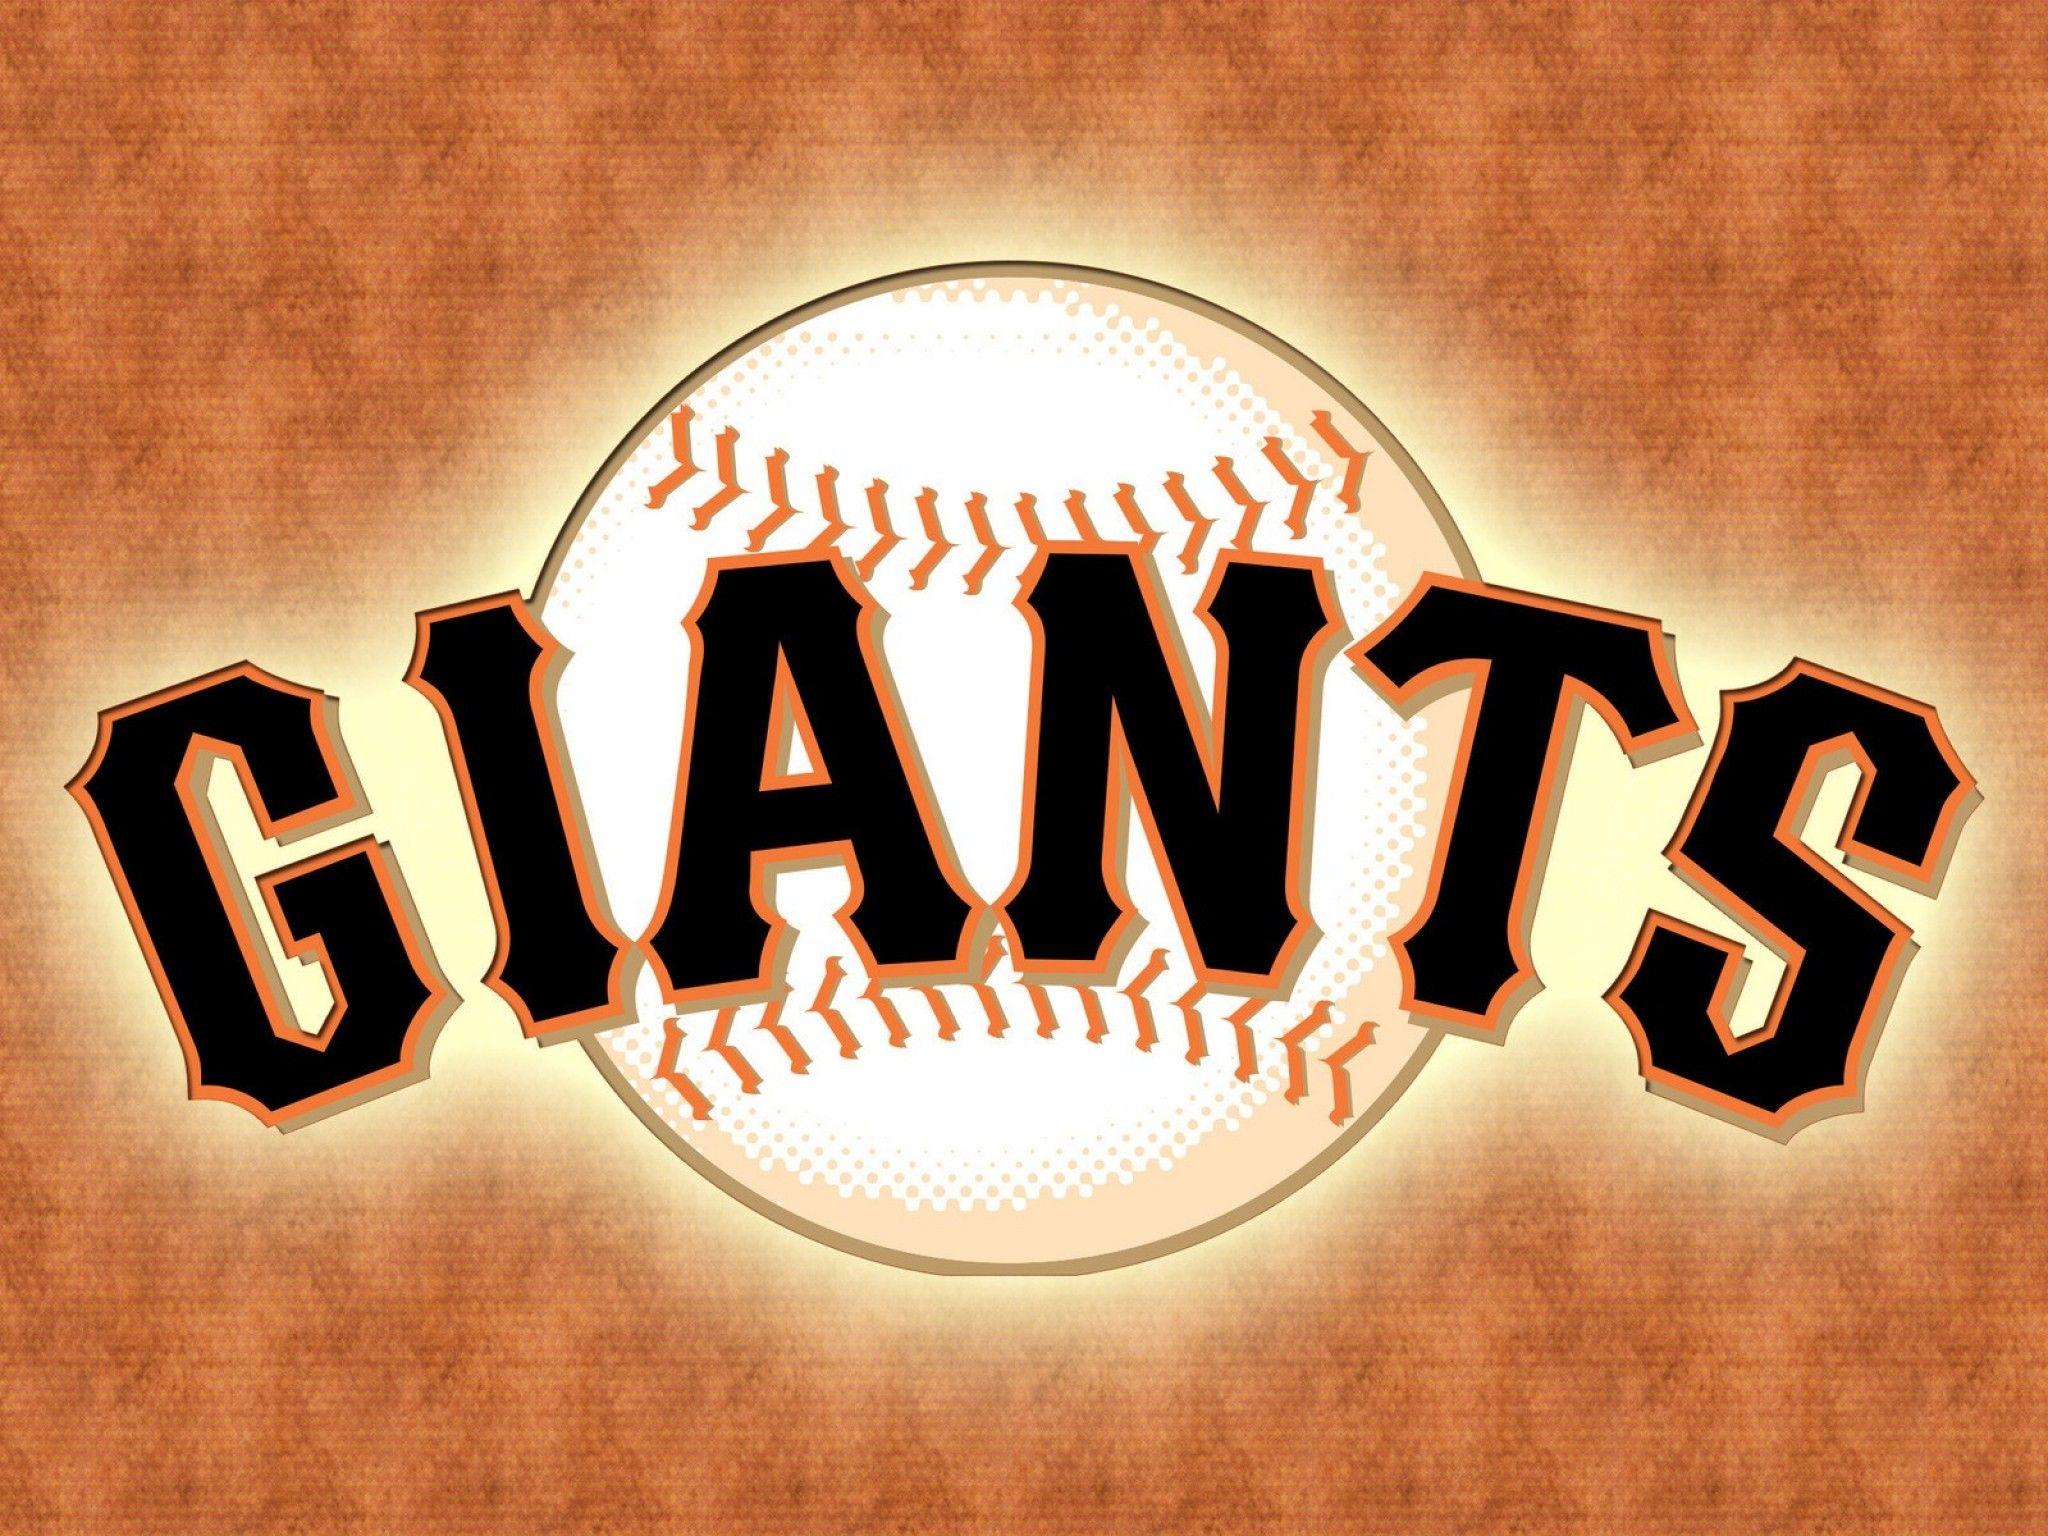 Giants Baseball Wallpapers Top Free Giants Baseball Backgrounds